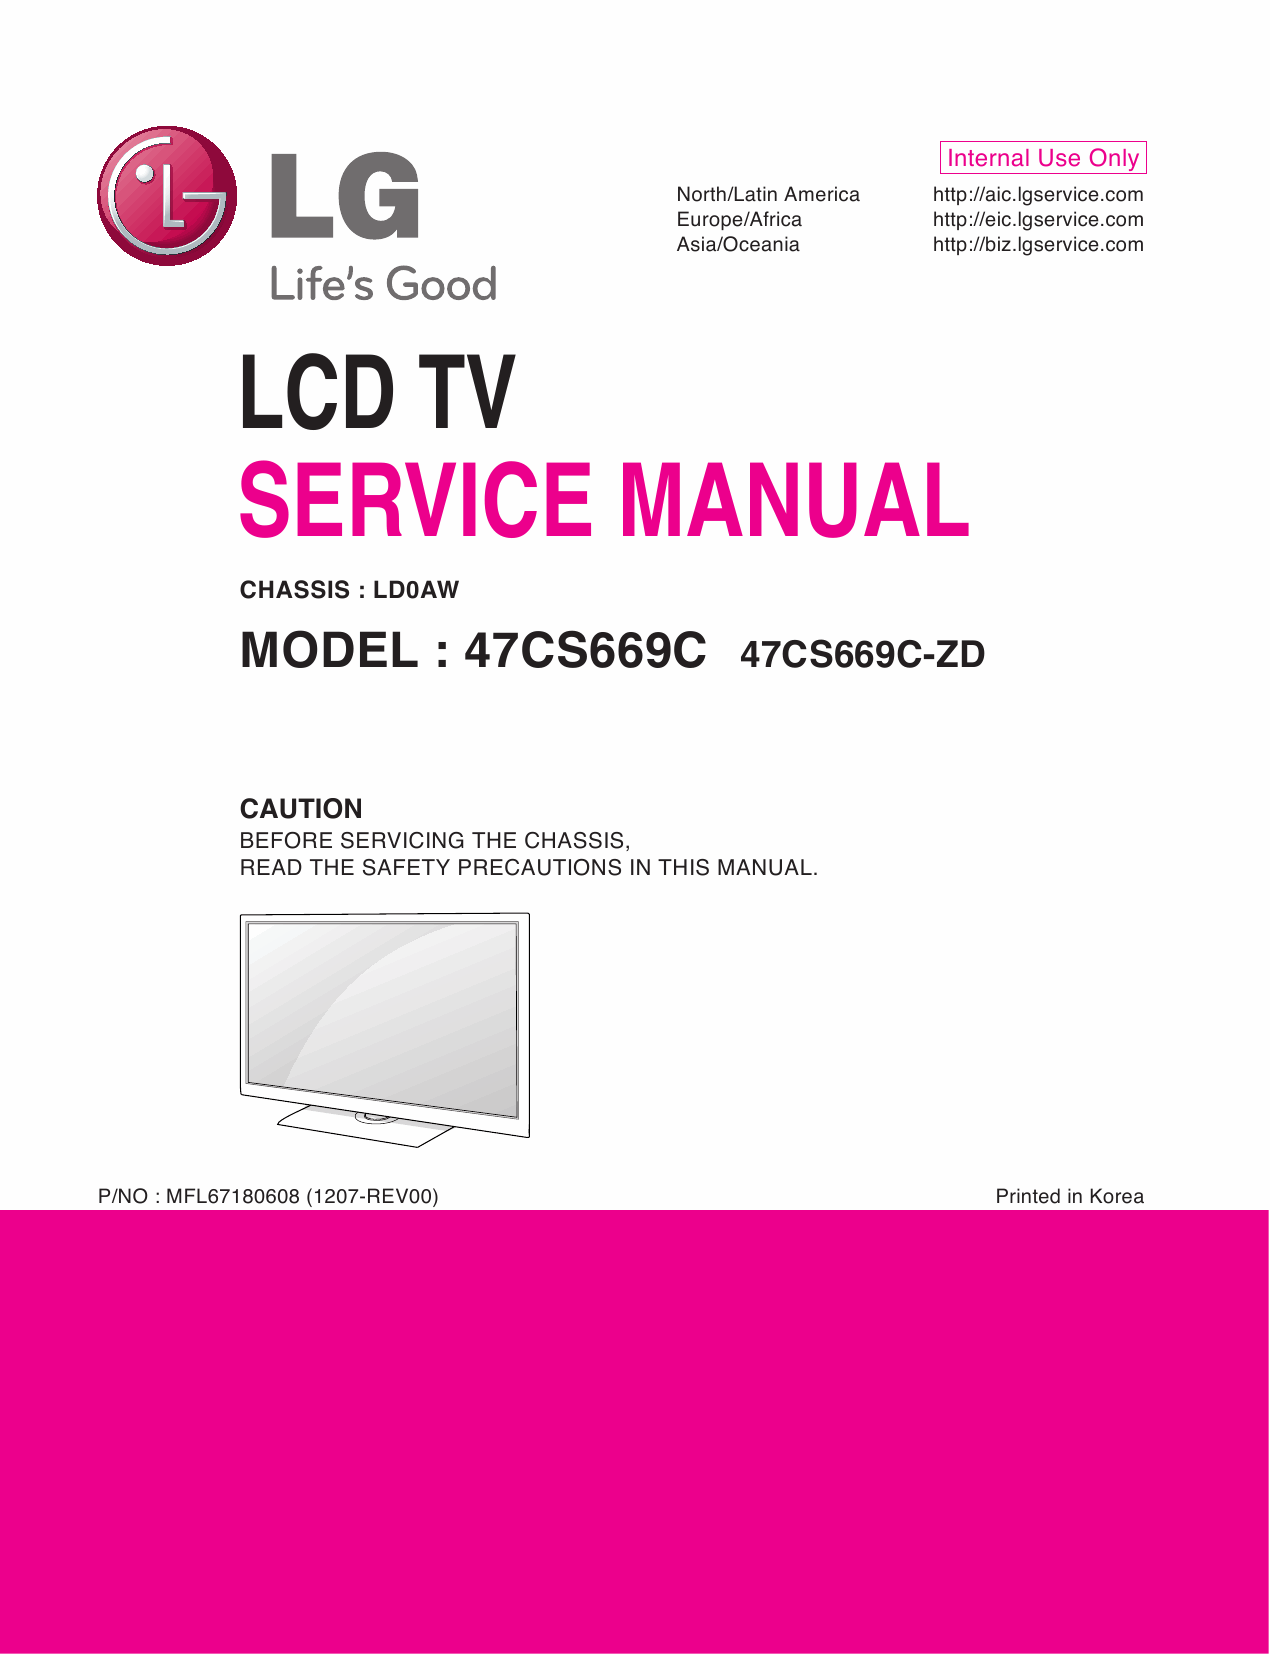 LG_LCD_TV_47CS669C_Service_Manual_2012_Qmanual.com-1